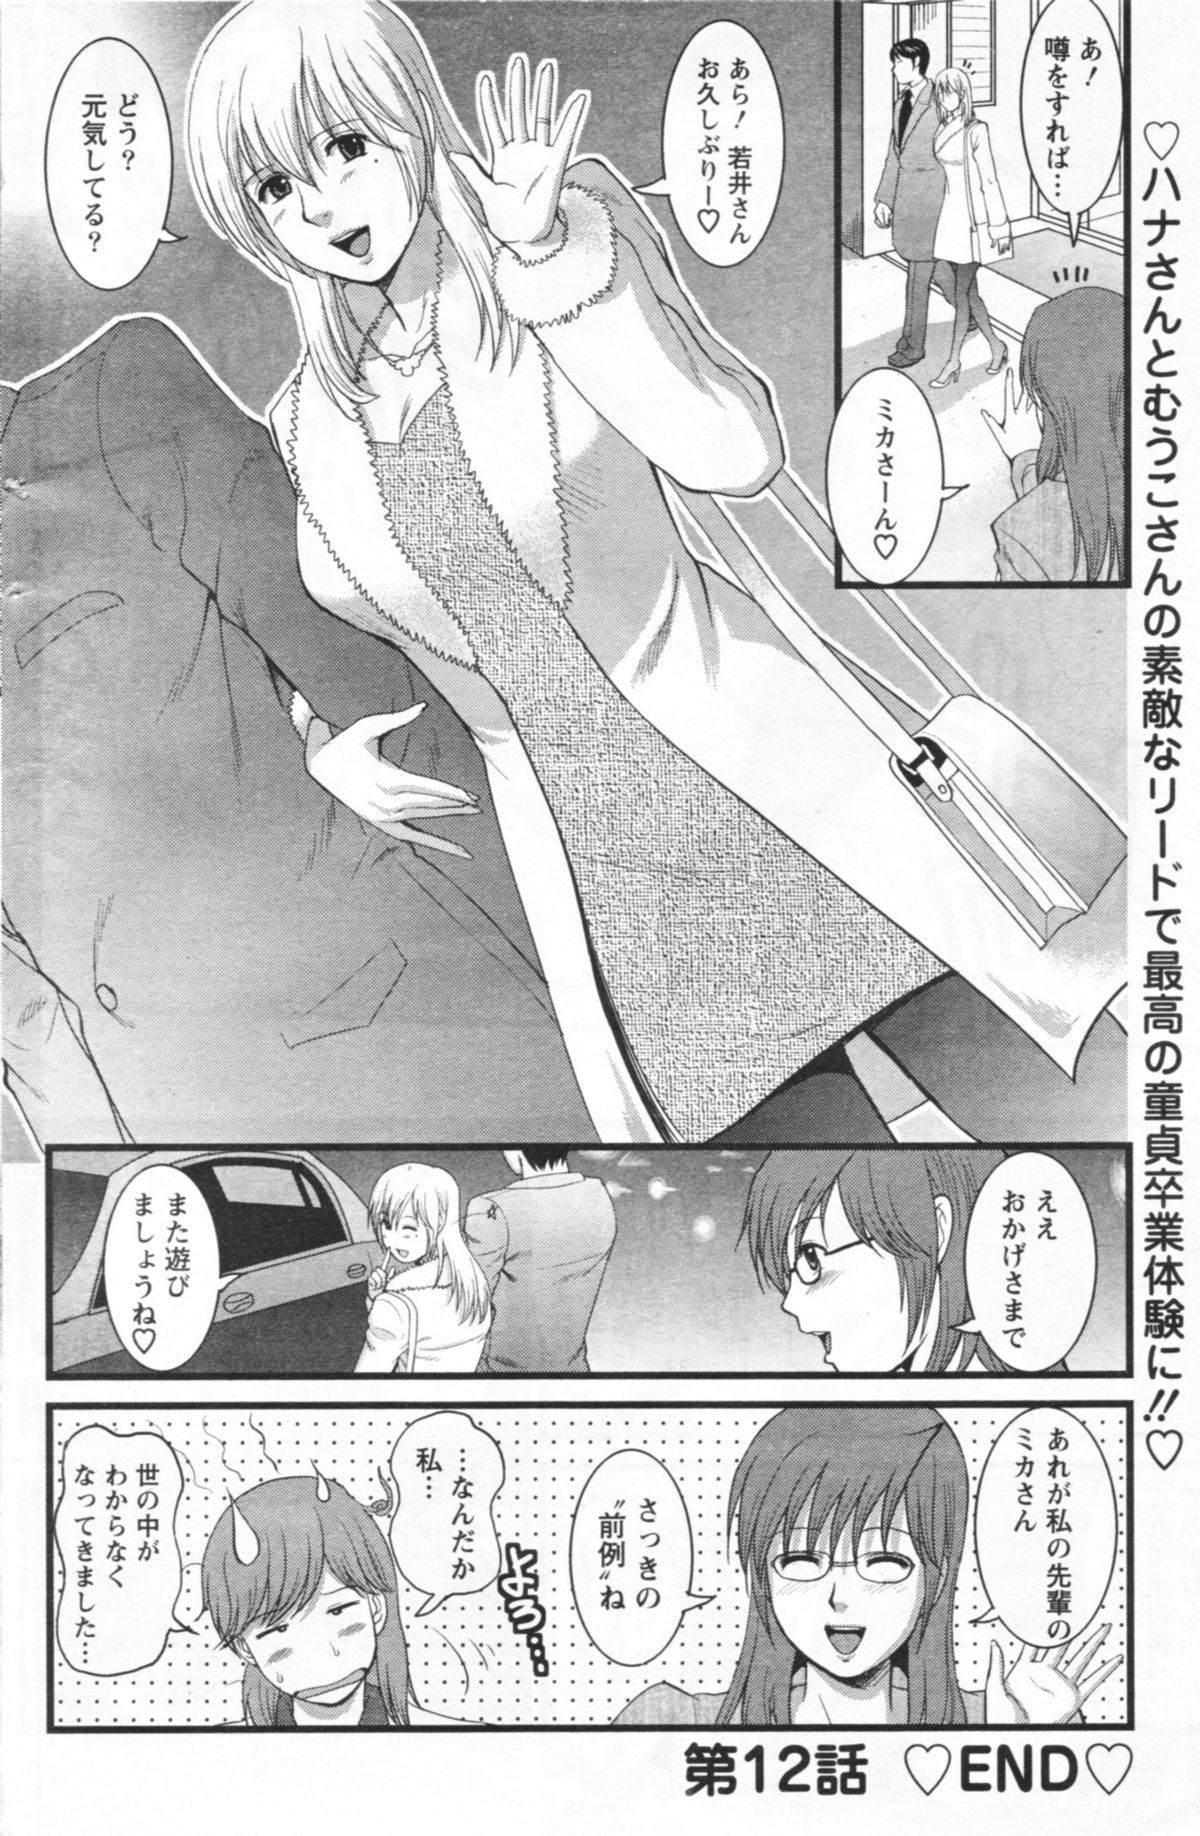 [Saigado] Haken no Muuko-san 12 page 22 full